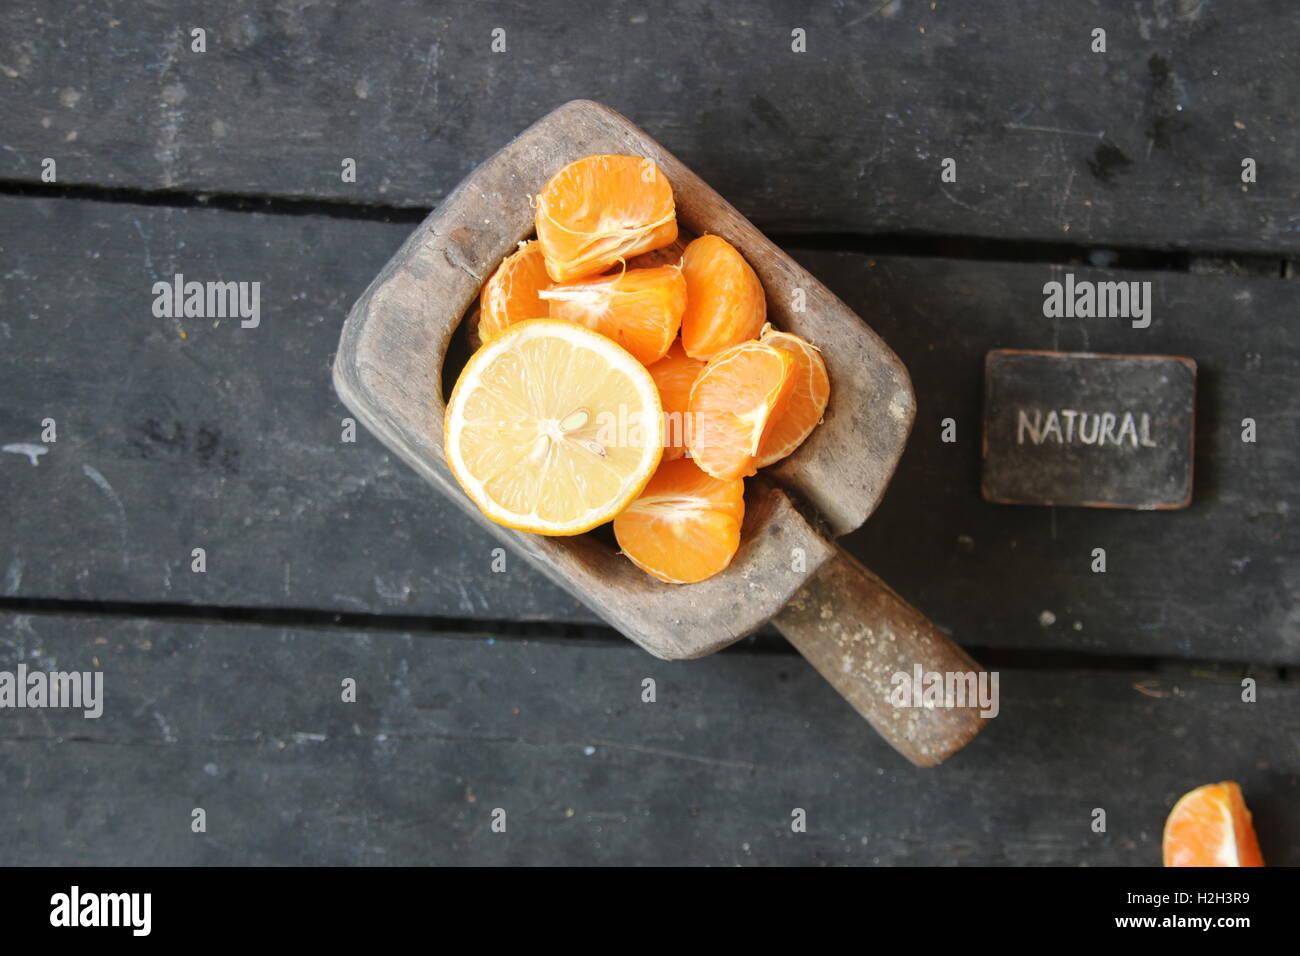 Signe naturel et des tranches de mandarine, citron Banque D'Images